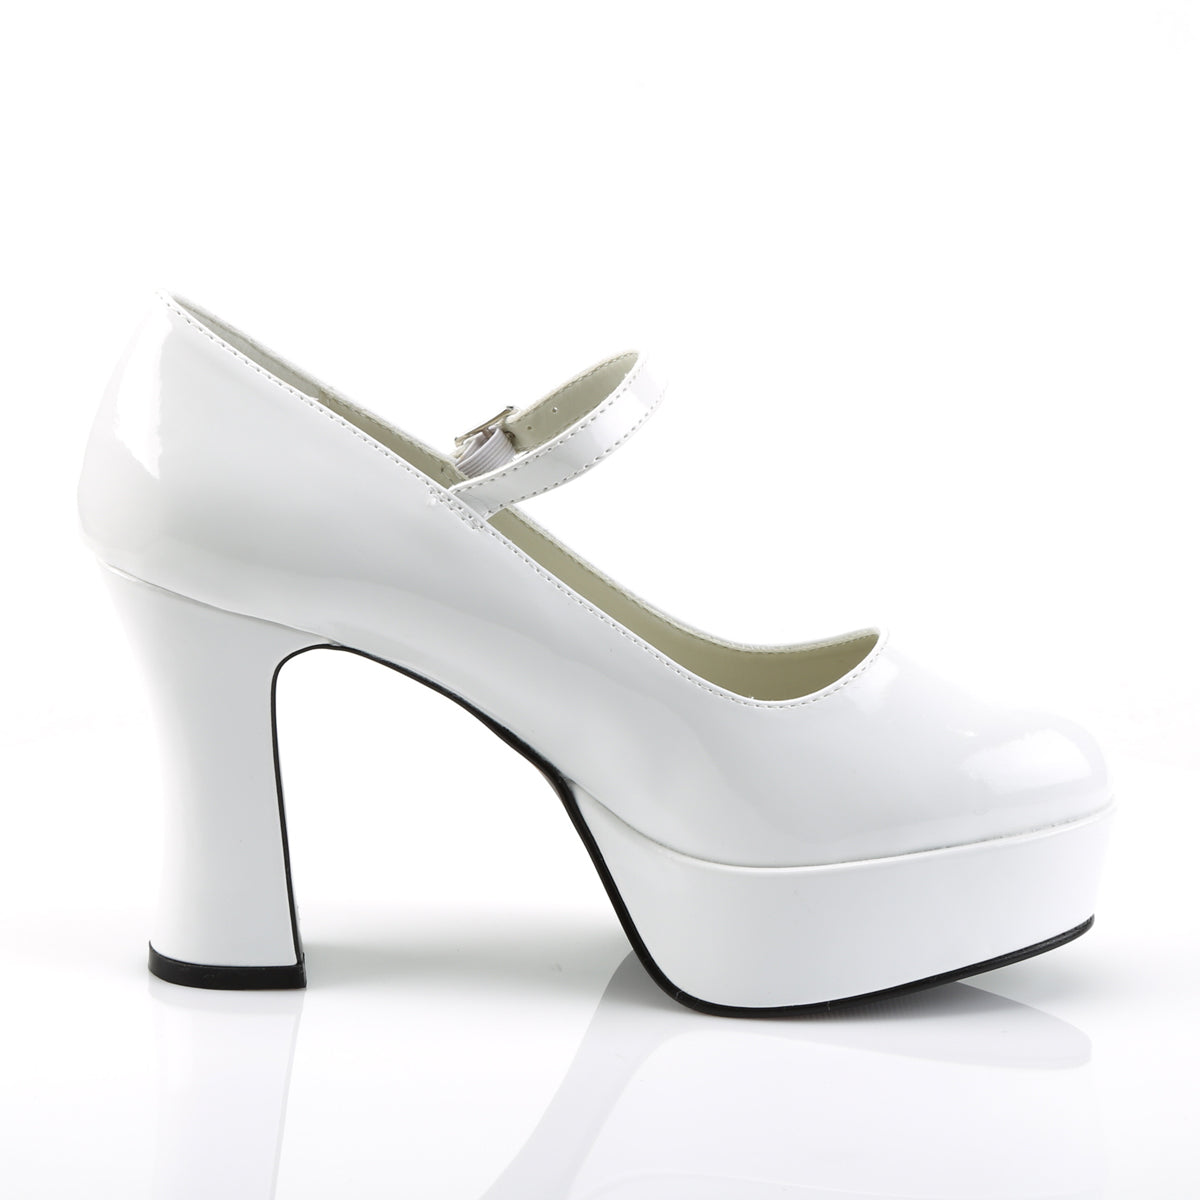 MARYJANE-50 Funtasma 4" Heel White Women's Costume Shoes Funtasma Costume Shoes Fancy Dress